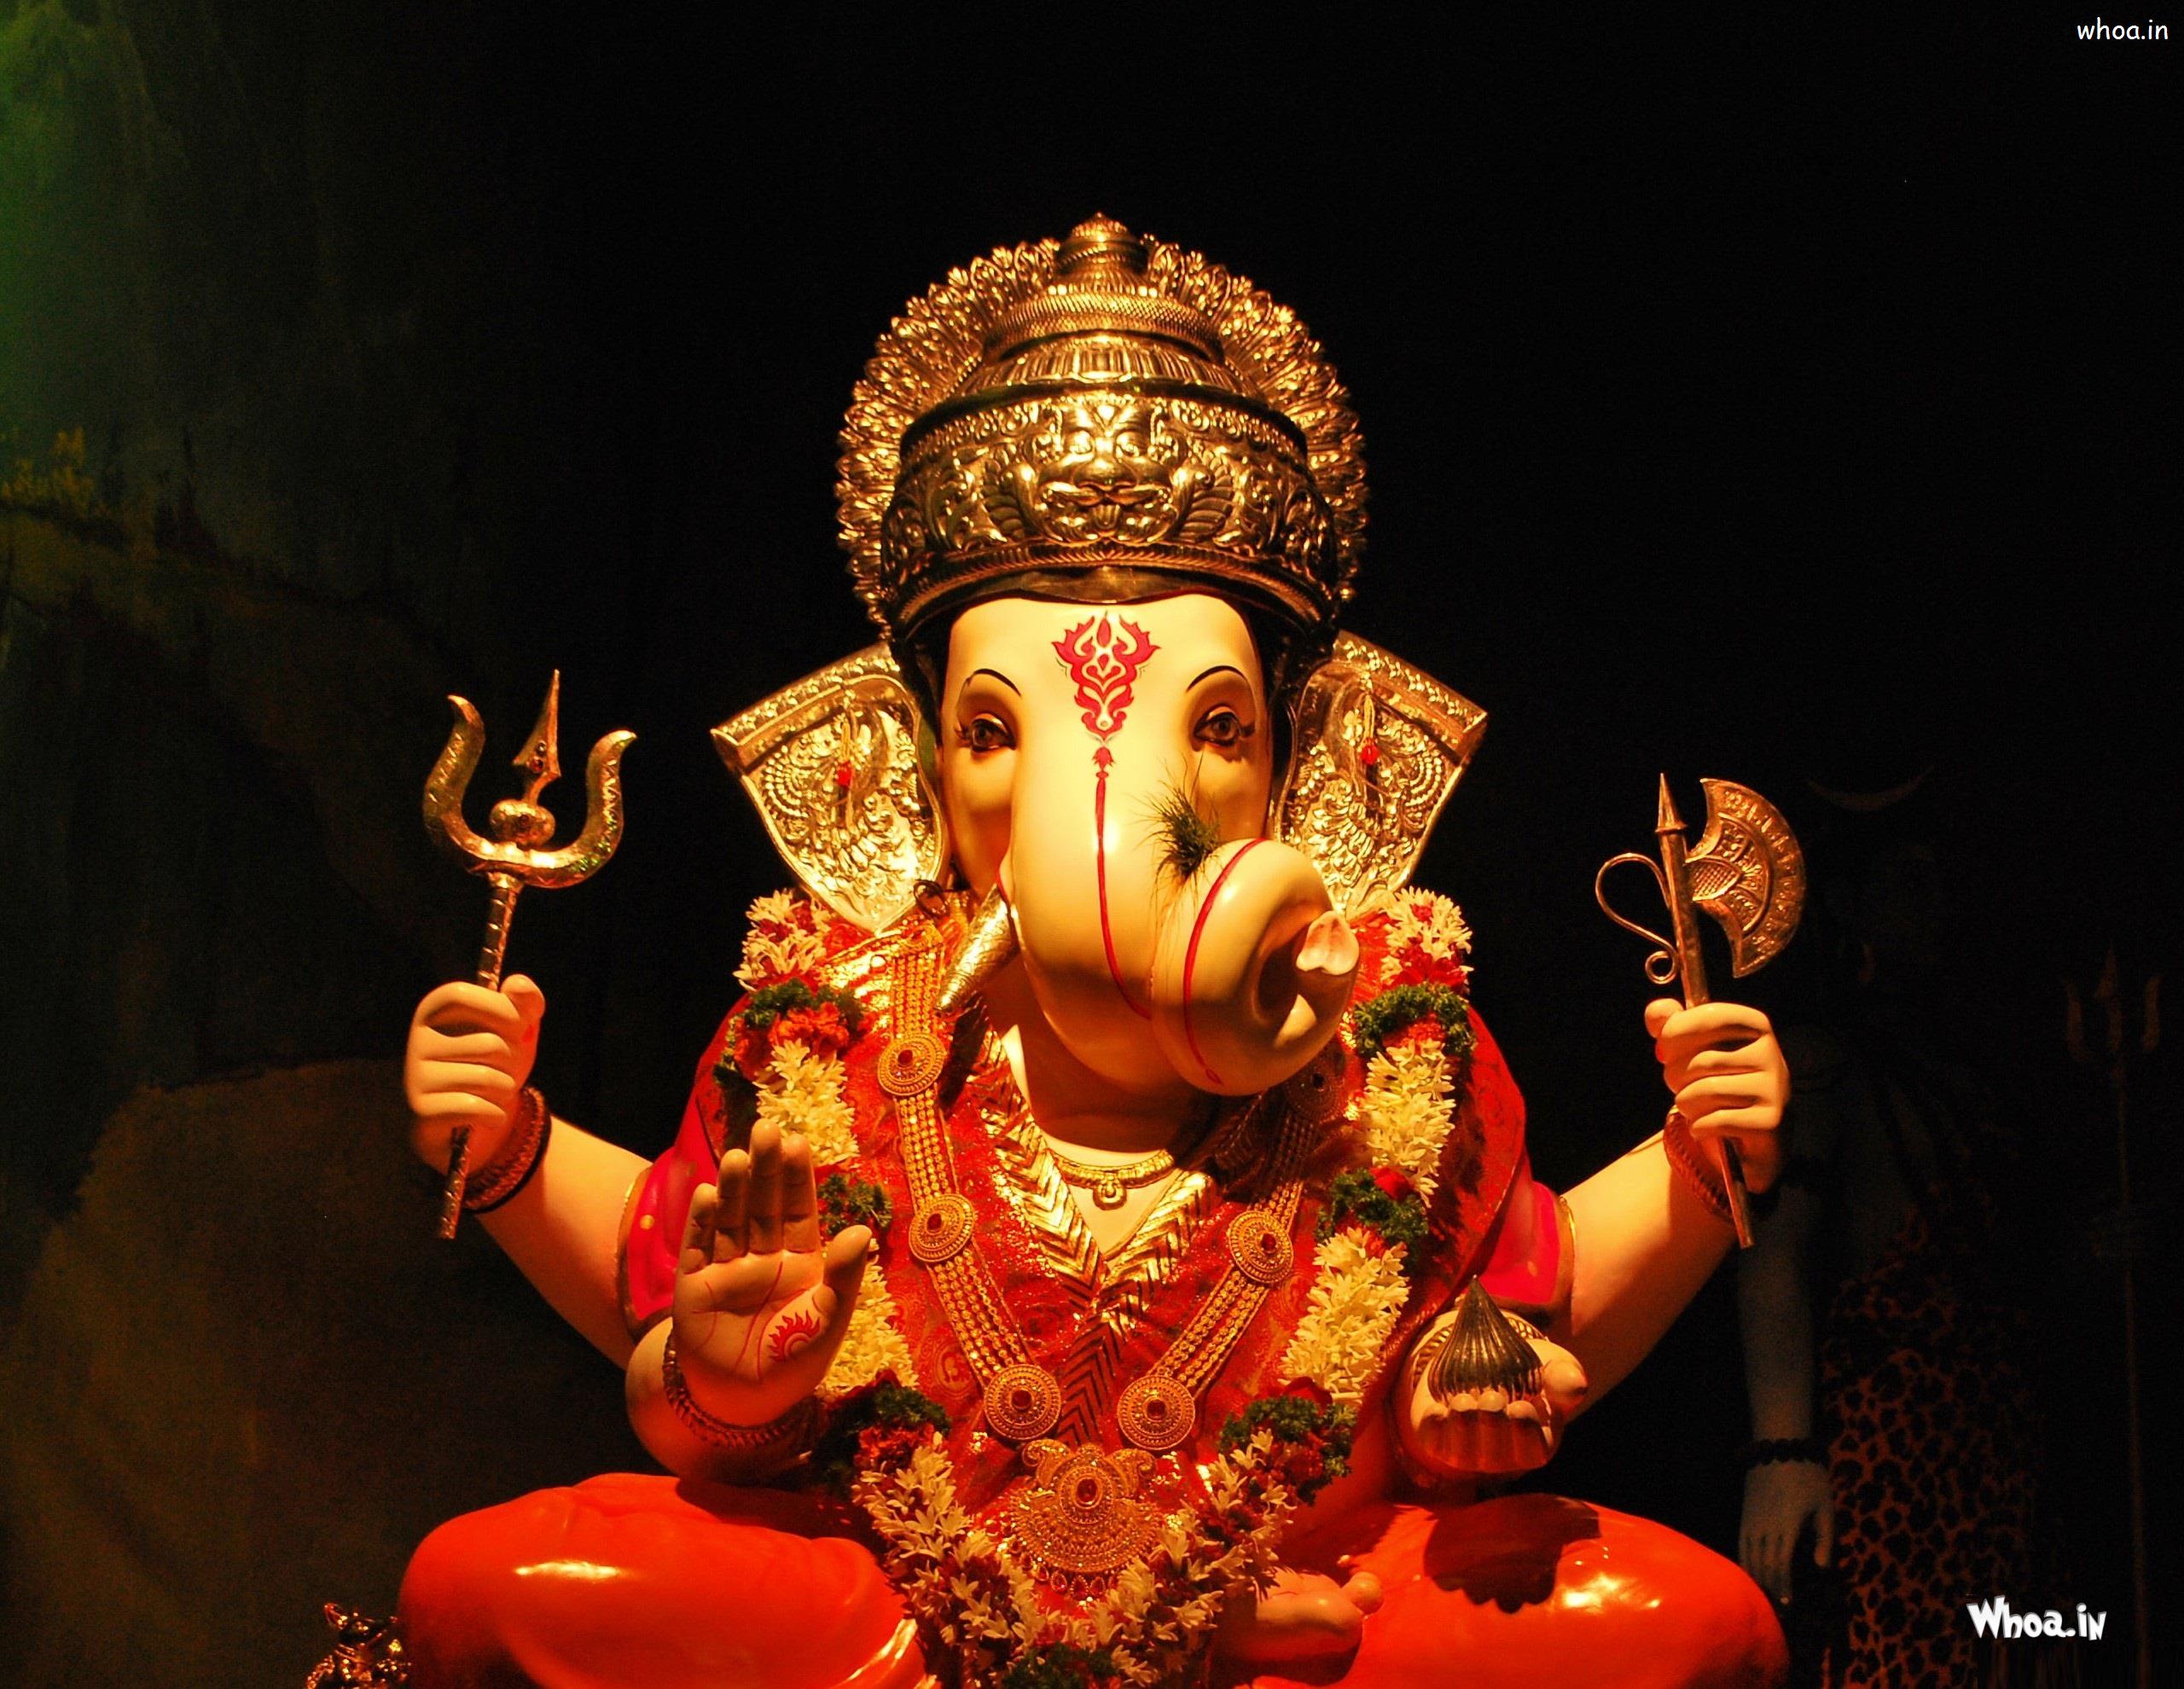 Hình nền HD của vị thần Ganesha đặt trên nền đen sẽ khiến bạn cảm thấy được sức mạnh đầy ý nghĩa của đức vị. Hãy để hình ảnh này trở thành một phần của cuộc sống của bạn, mang đến cho bạn năng lượng và sự thanh tịnh.